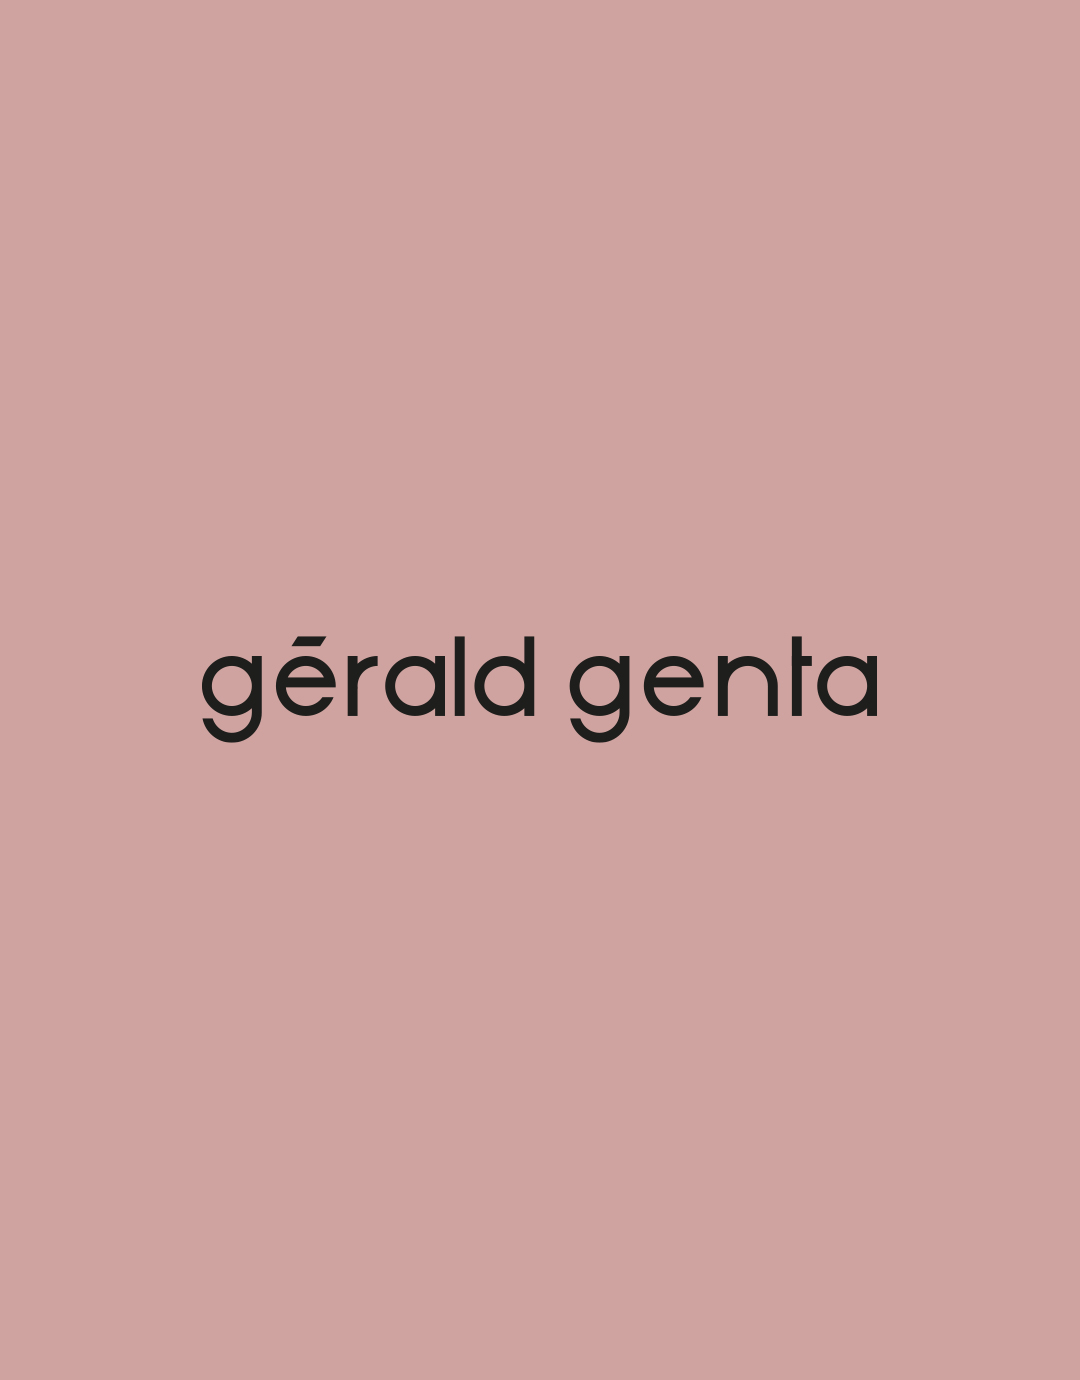 www.geraldgenta.com